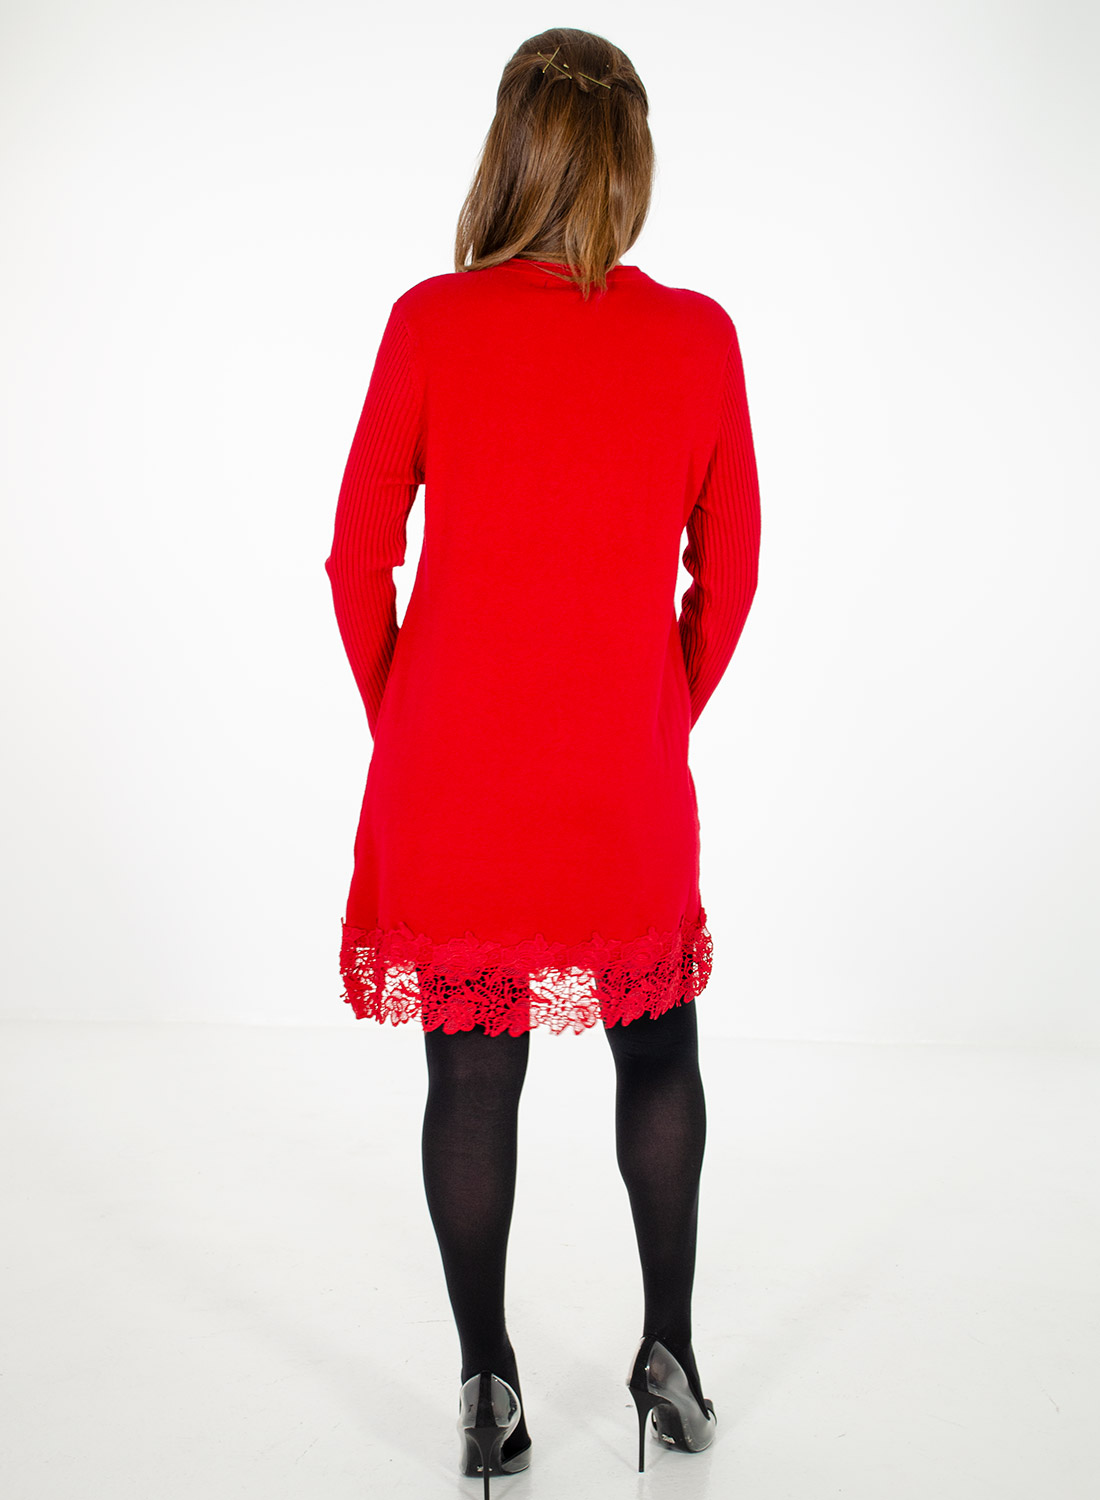 Κόκκινο εντυπωσιακό πλεκτό μπλουζοφόρεμα με δαντέλα